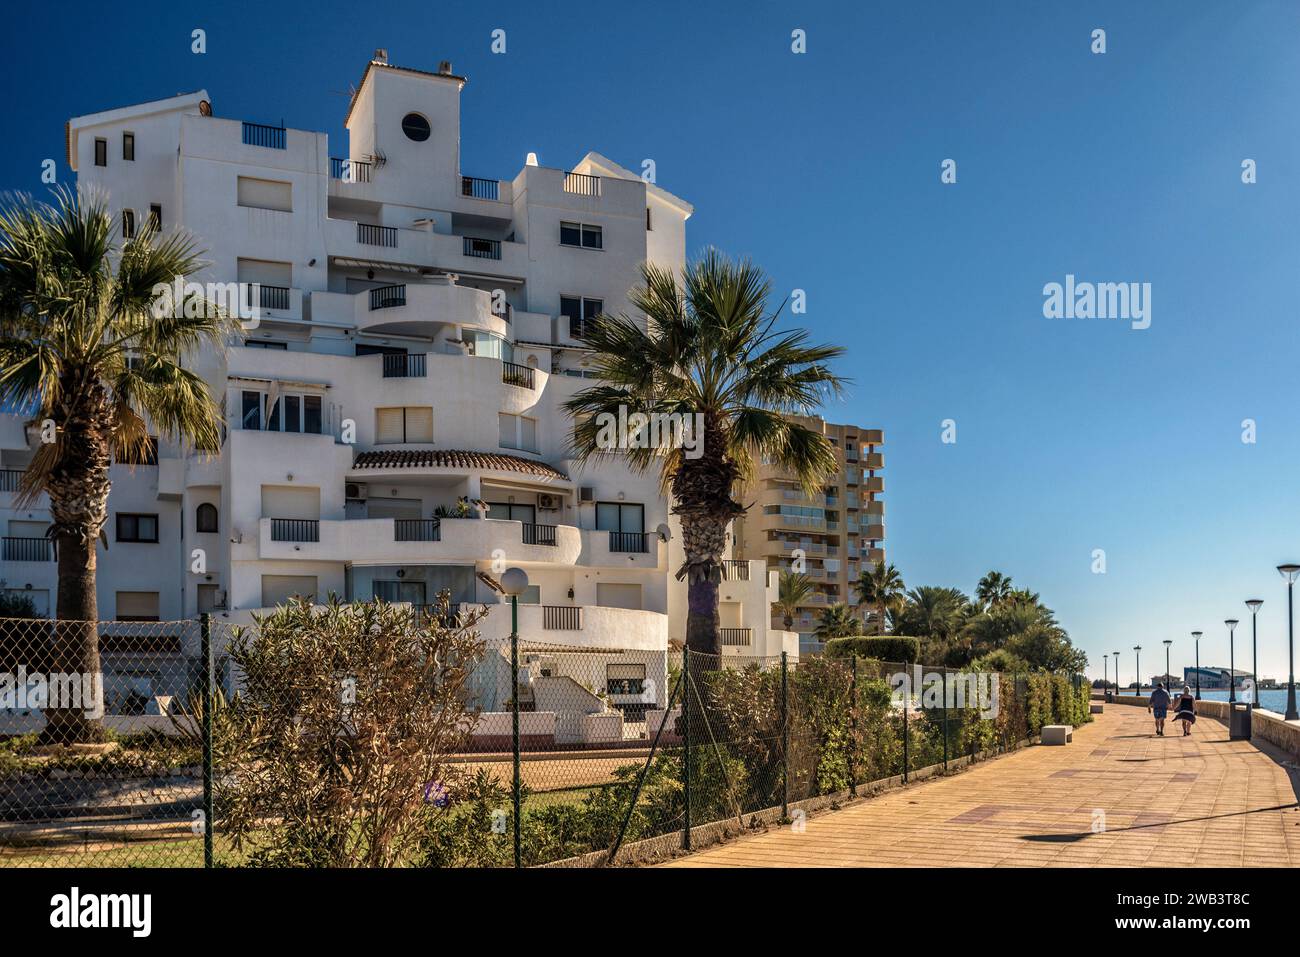 Appartements dans l'urbanisation de la Manga, une icône touristique de 24 kilomètres baignée par deux mers, Méditerranée et Mar Menor dans la région de Murcie, Espagne Banque D'Images